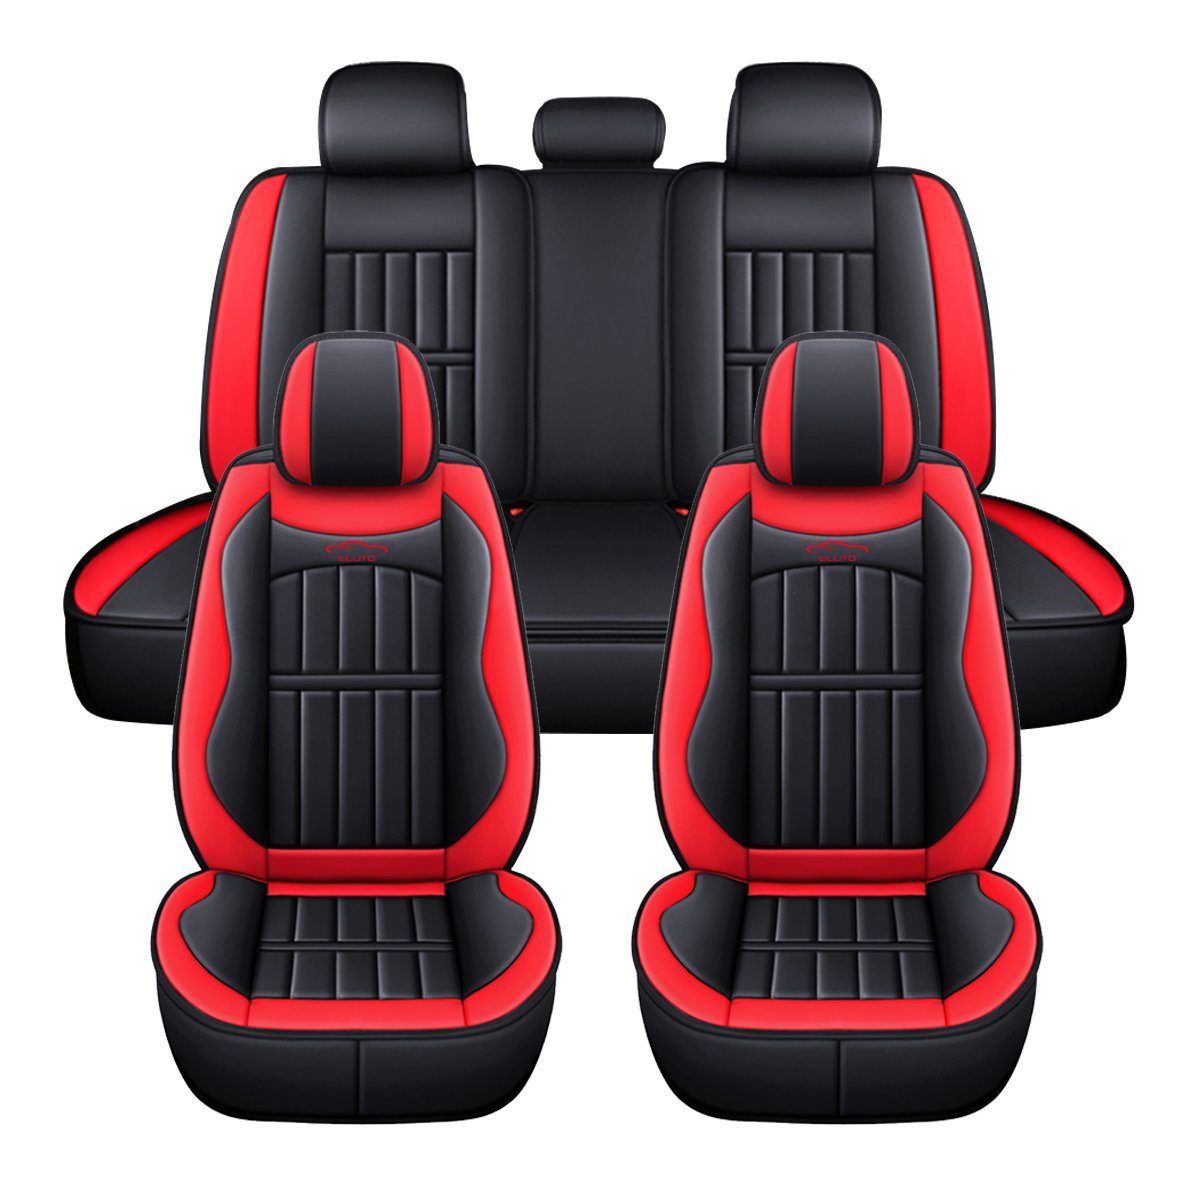 5-sitz Komplettsatz Leder Universal Auto Sitzbezüge Sitzschutz Schonbezüge  Set